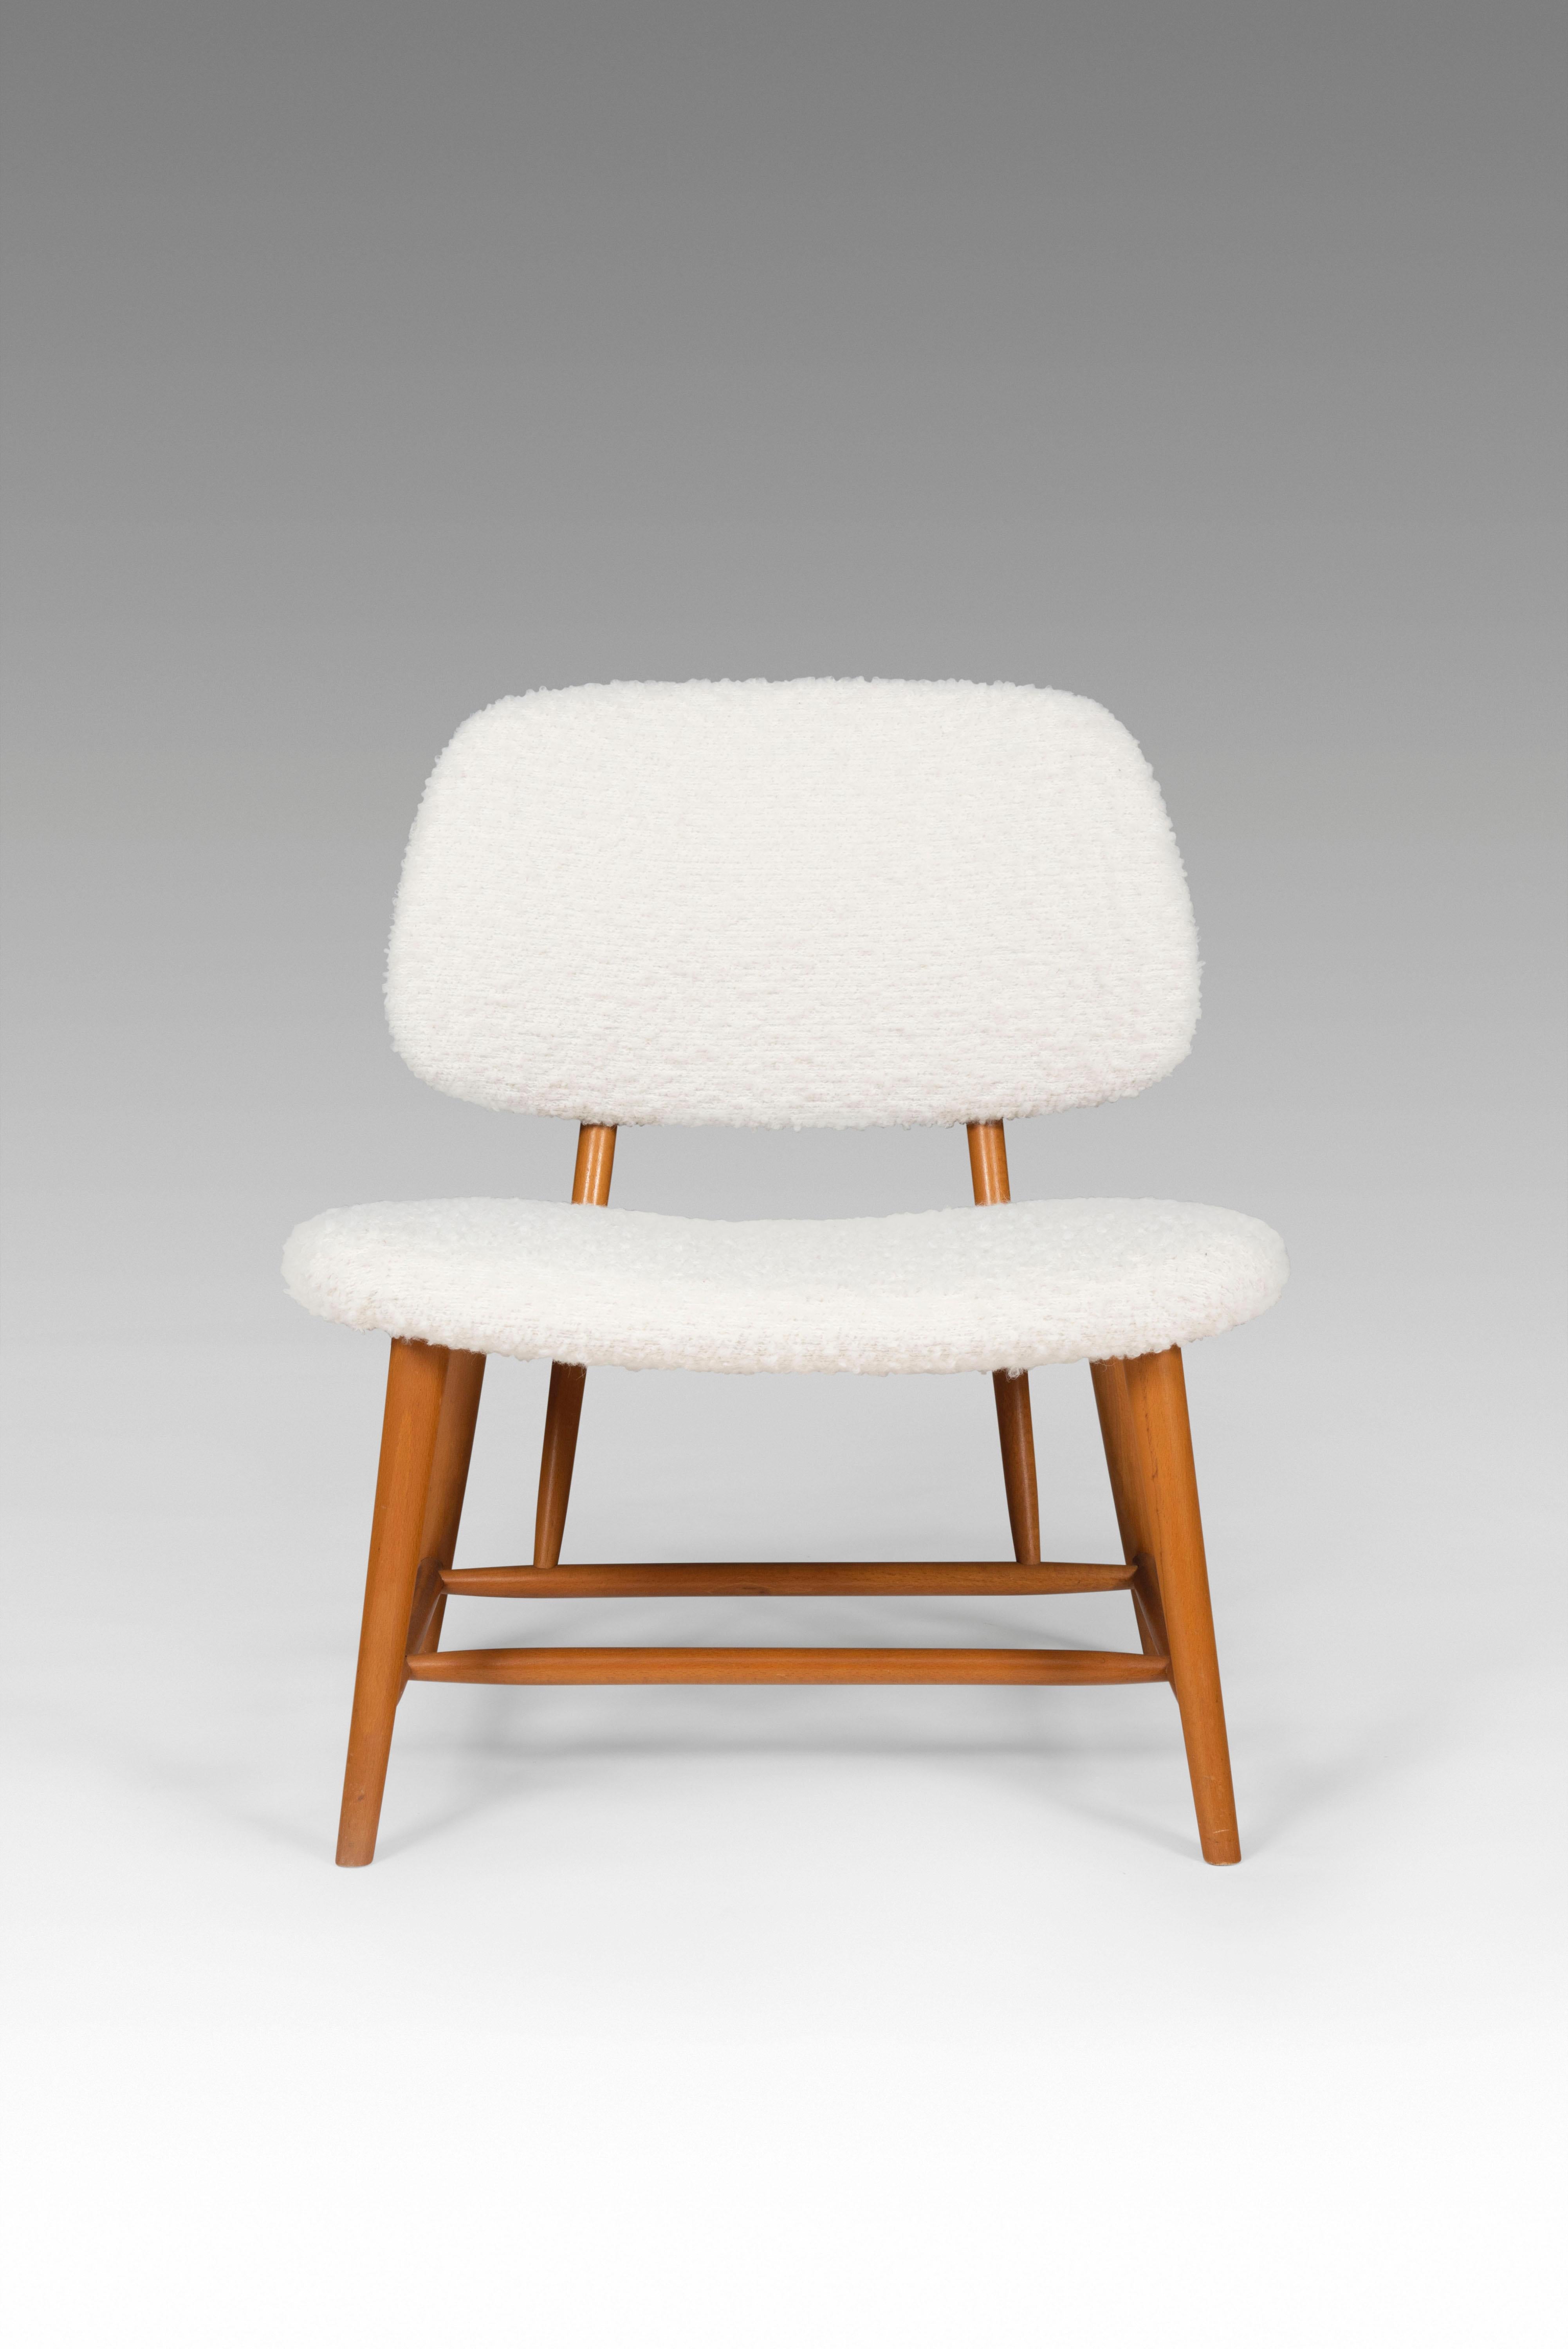 Cette paire de chaises longues a été conçue en 1953 par le designer de meubles suédois Alf Svensson. Fabriqué par Studio Ljungs Industrier AB Malmö dans les années 1950. Le modèle s'appelle 